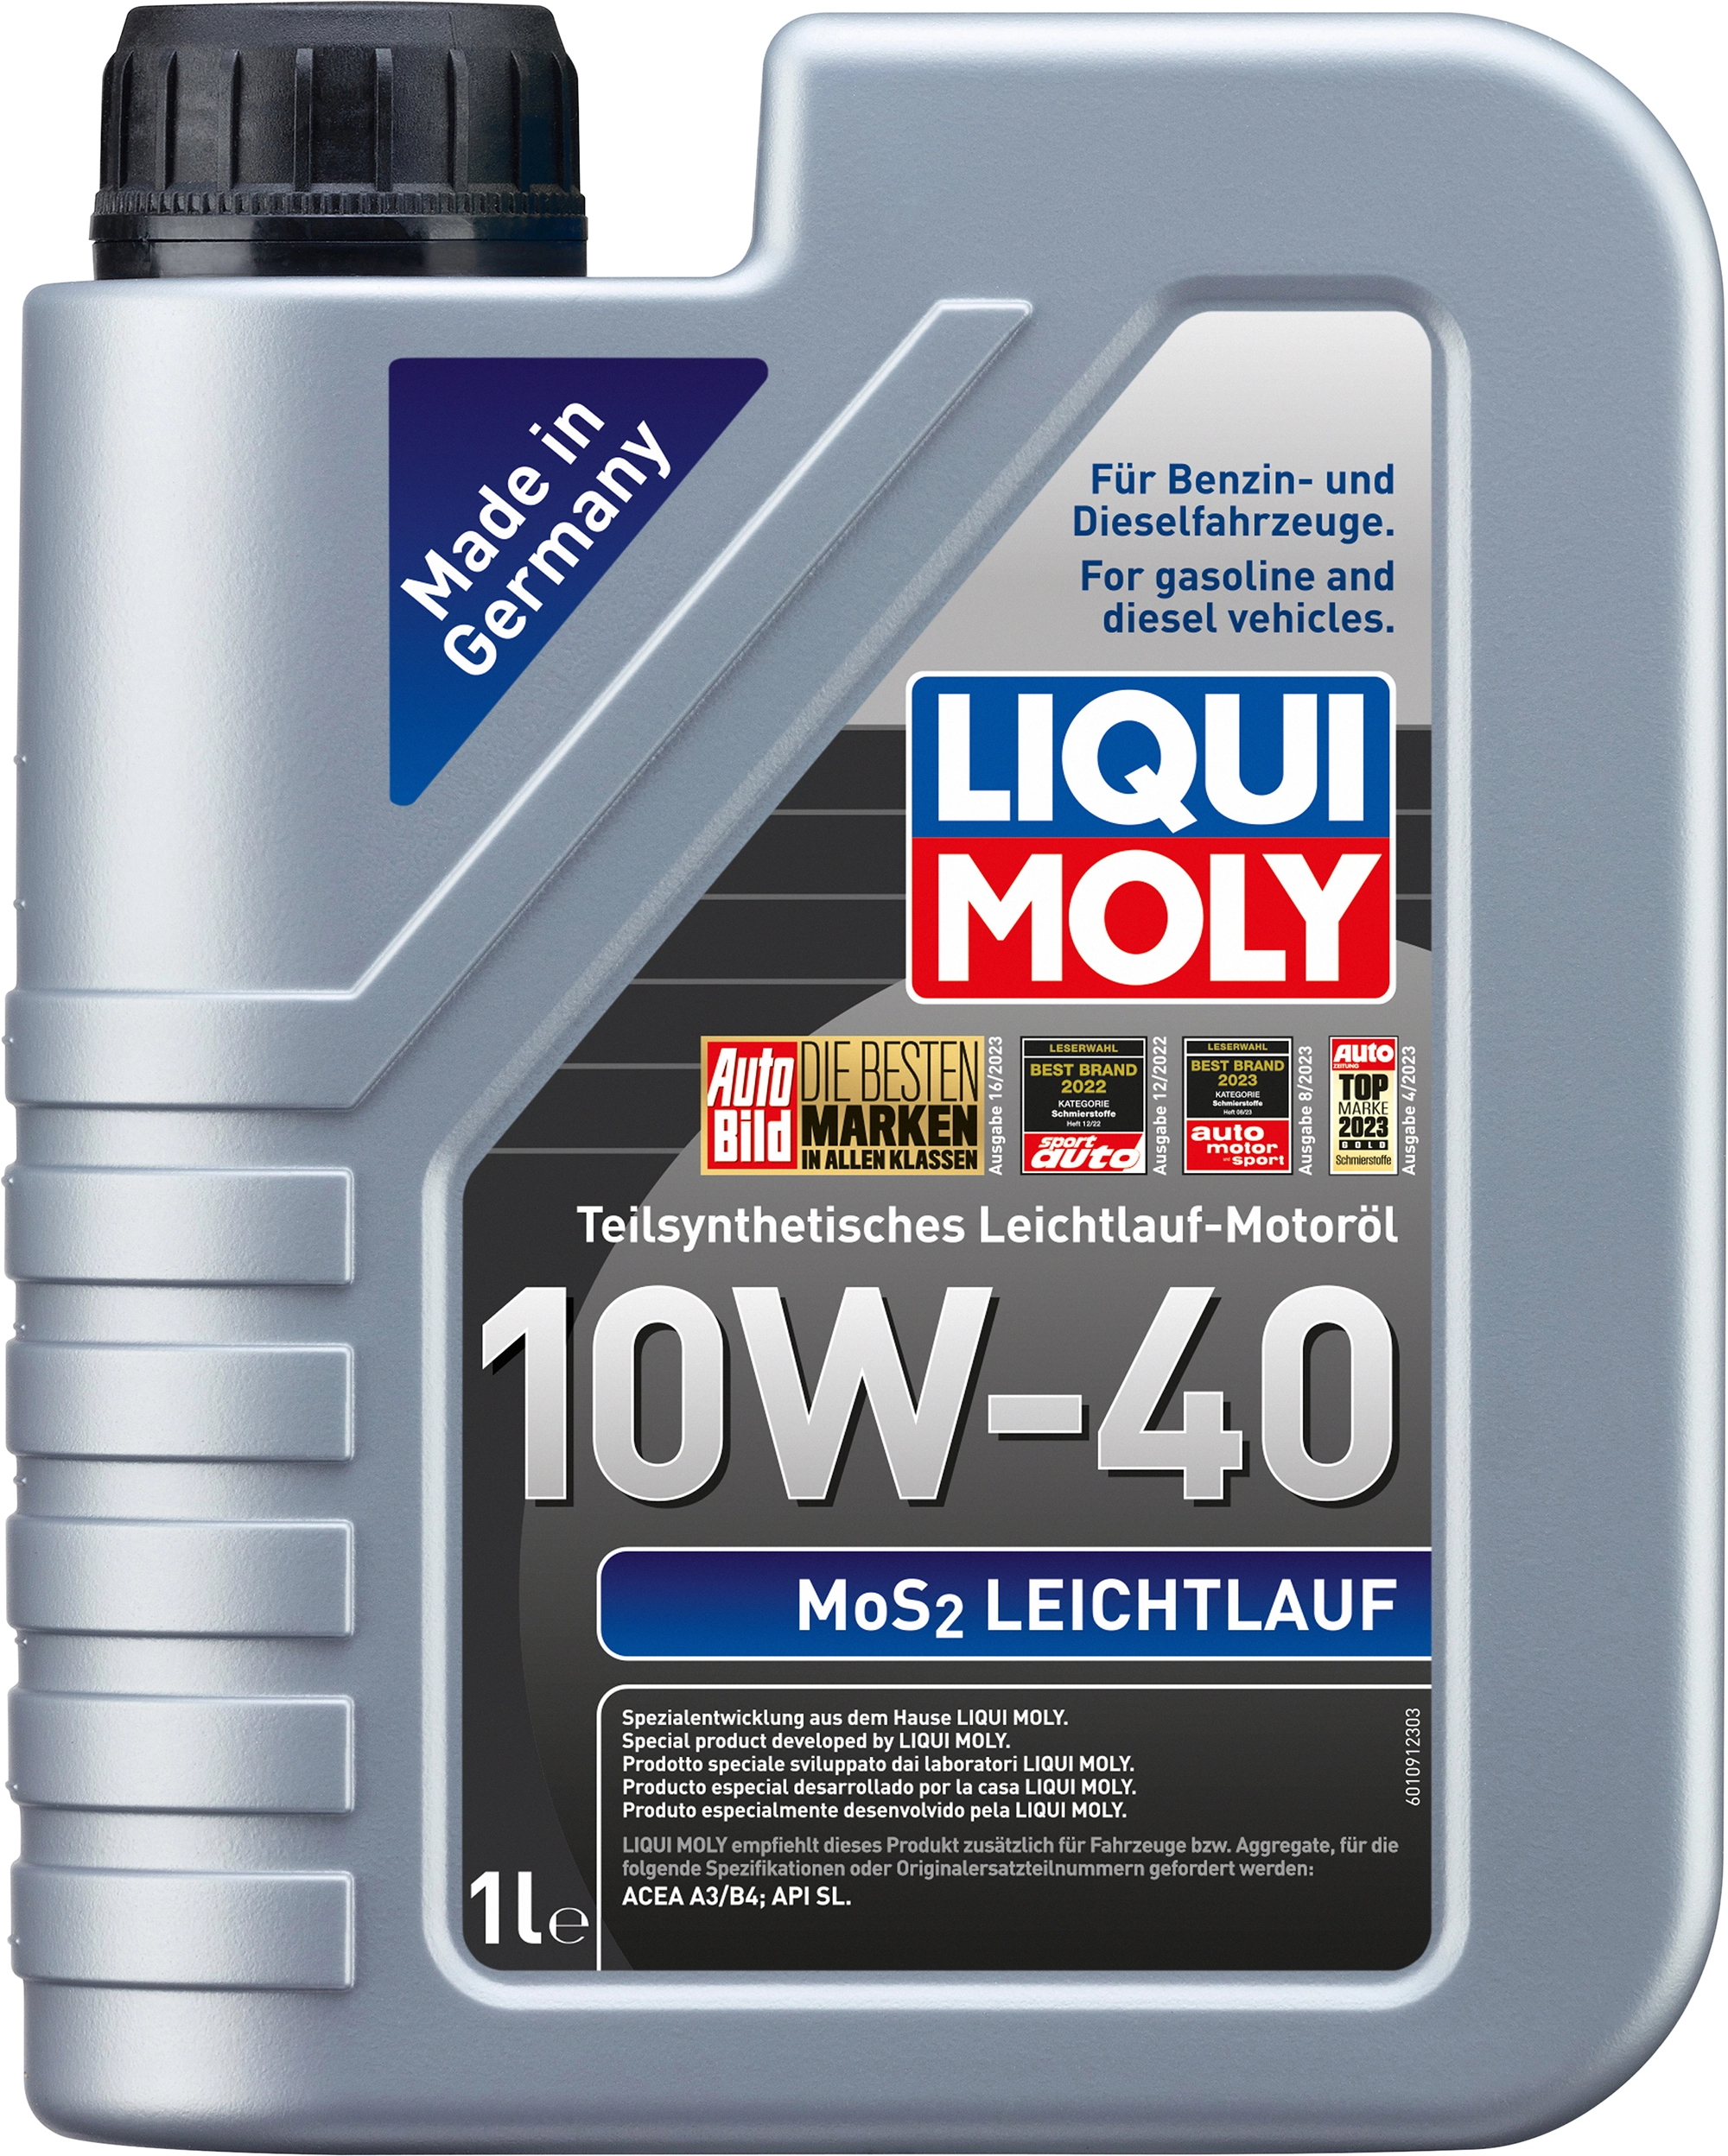 Liqui Moly MoS2 Leichtlauf 10W-40 1 l kaufen bei OBI